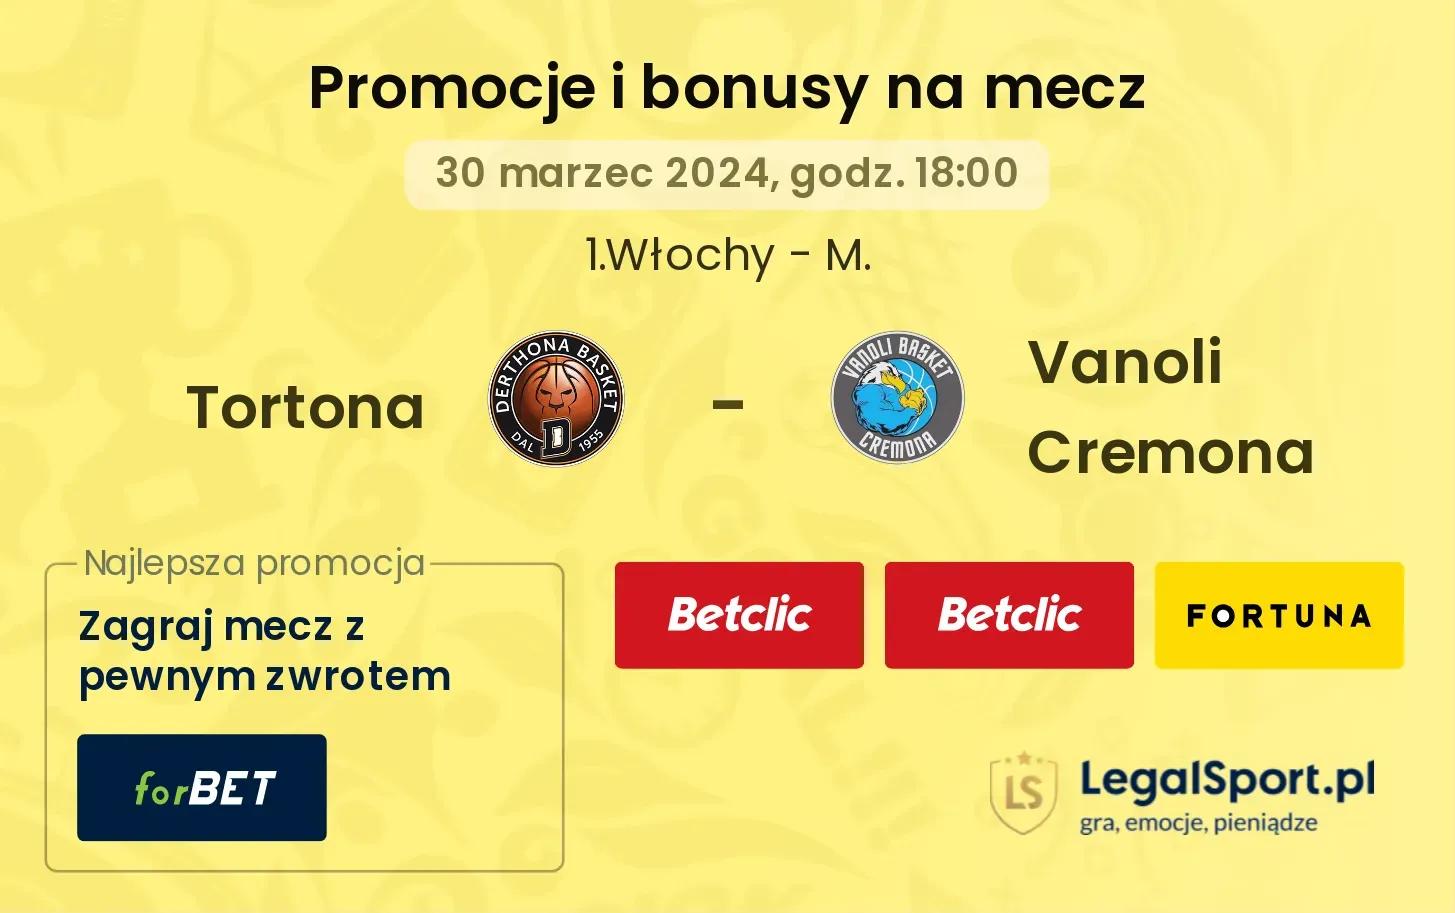 Tortona - Vanoli Cremona promocje bonusy na mecz